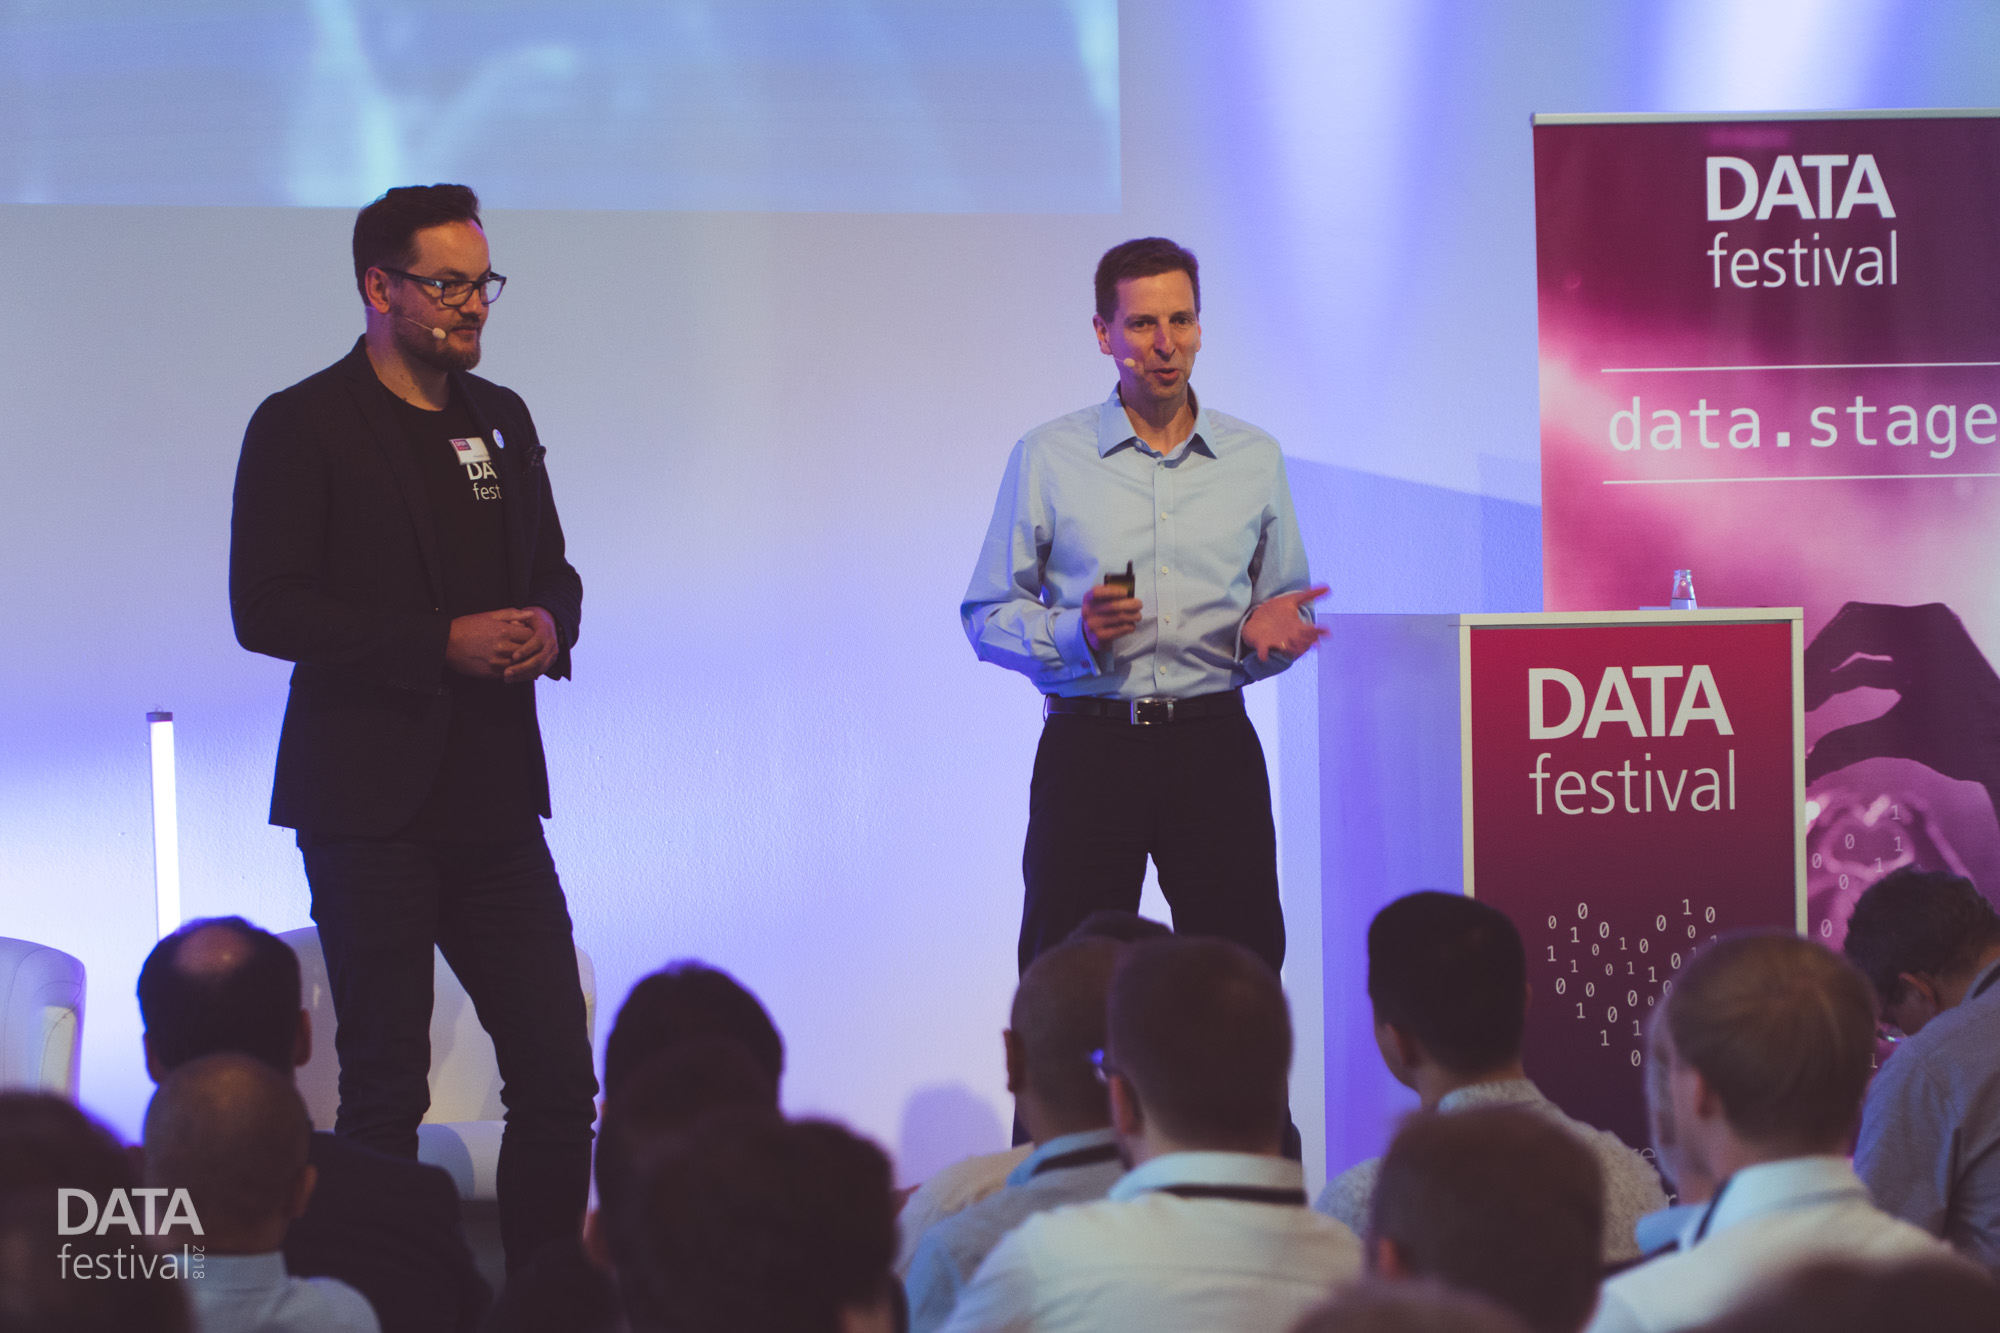 Speaker für das Data Festival 2019 in München gesucht